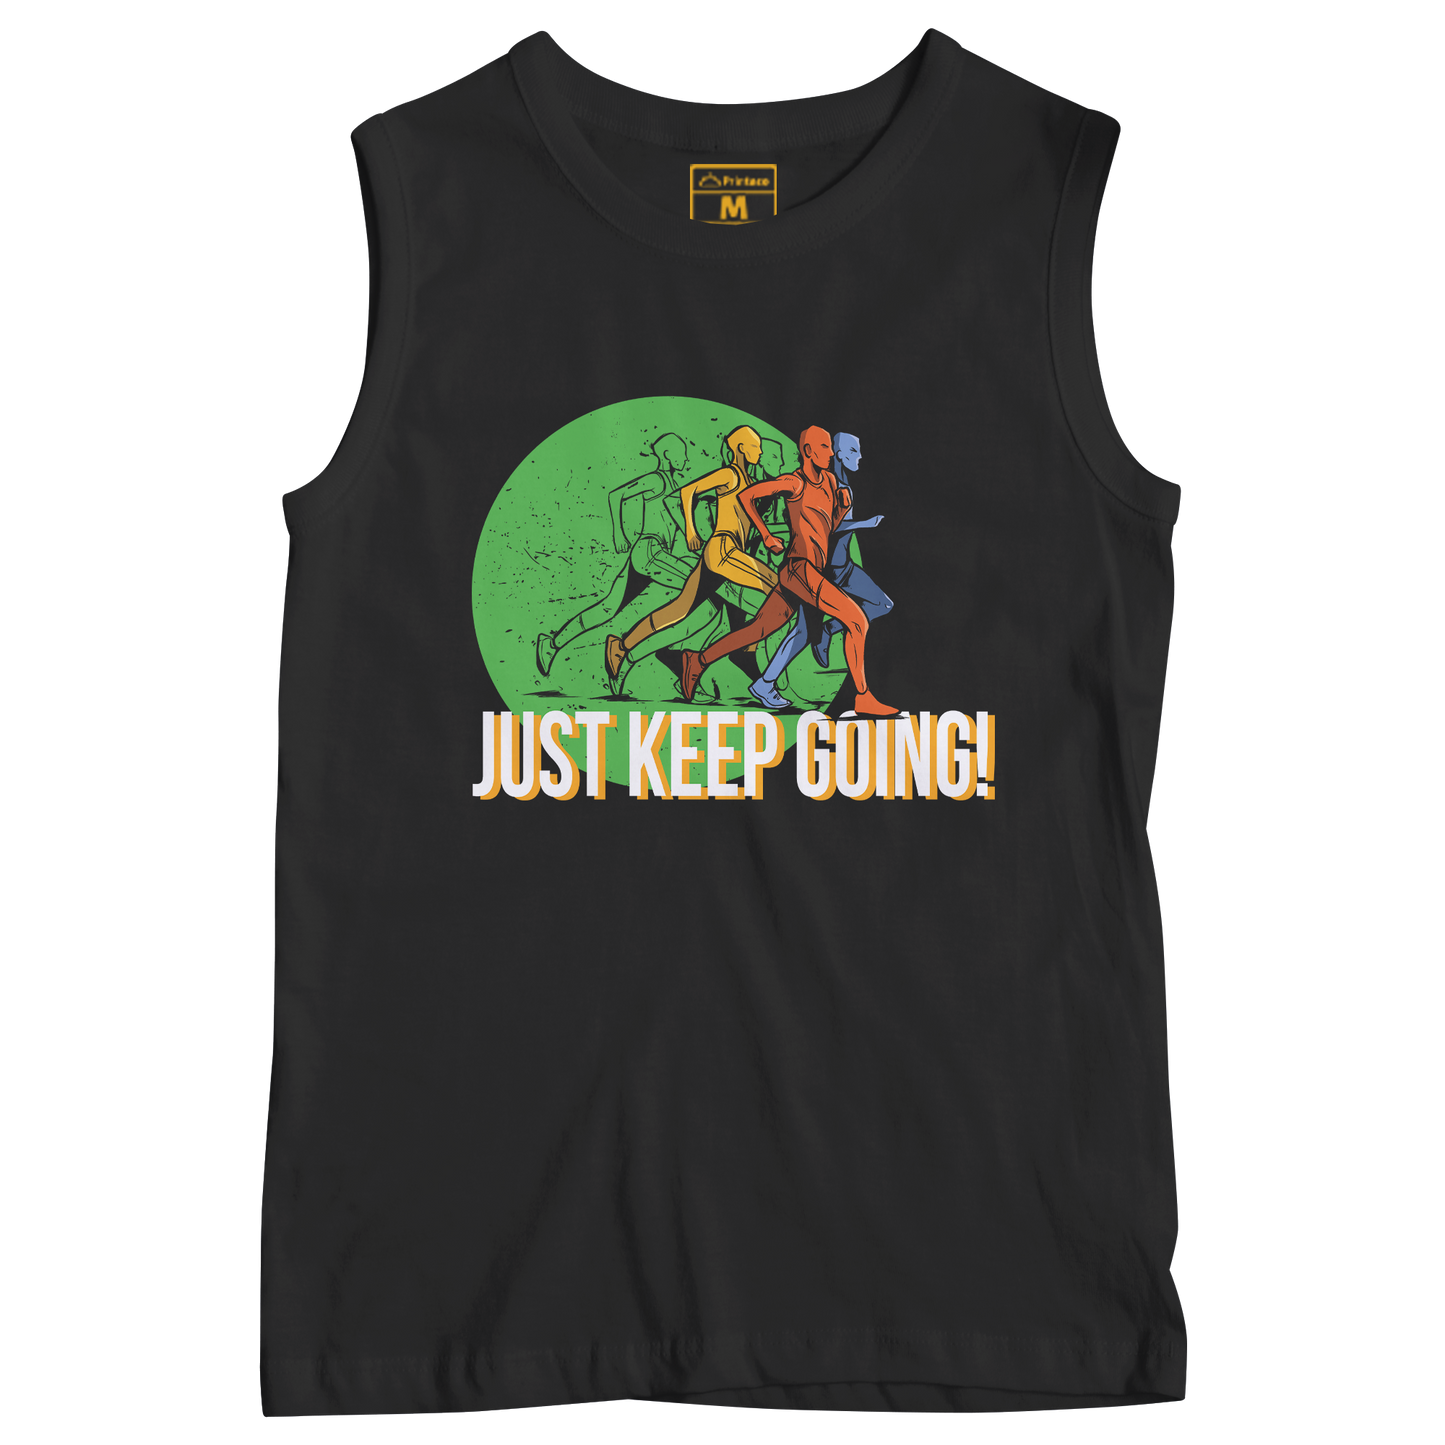 Sleeveless Drifit Shirt: Just Keep Going